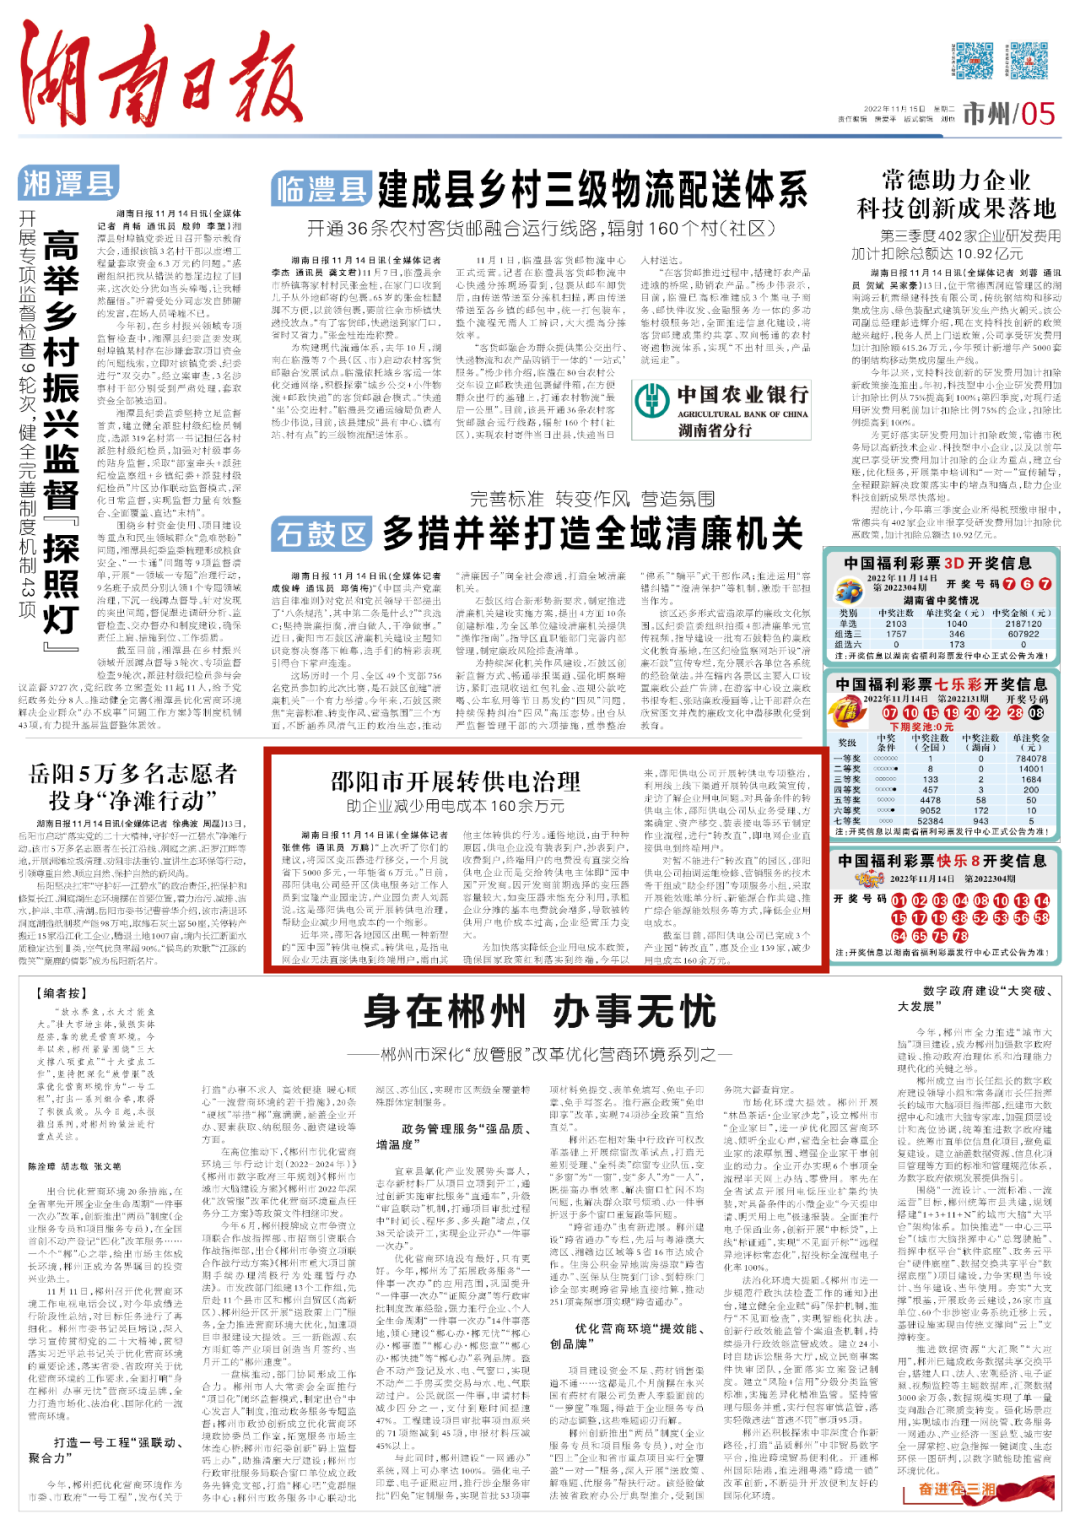 邵阳市开展转供电治理 助企业减少用电成本160余万元_邵商网